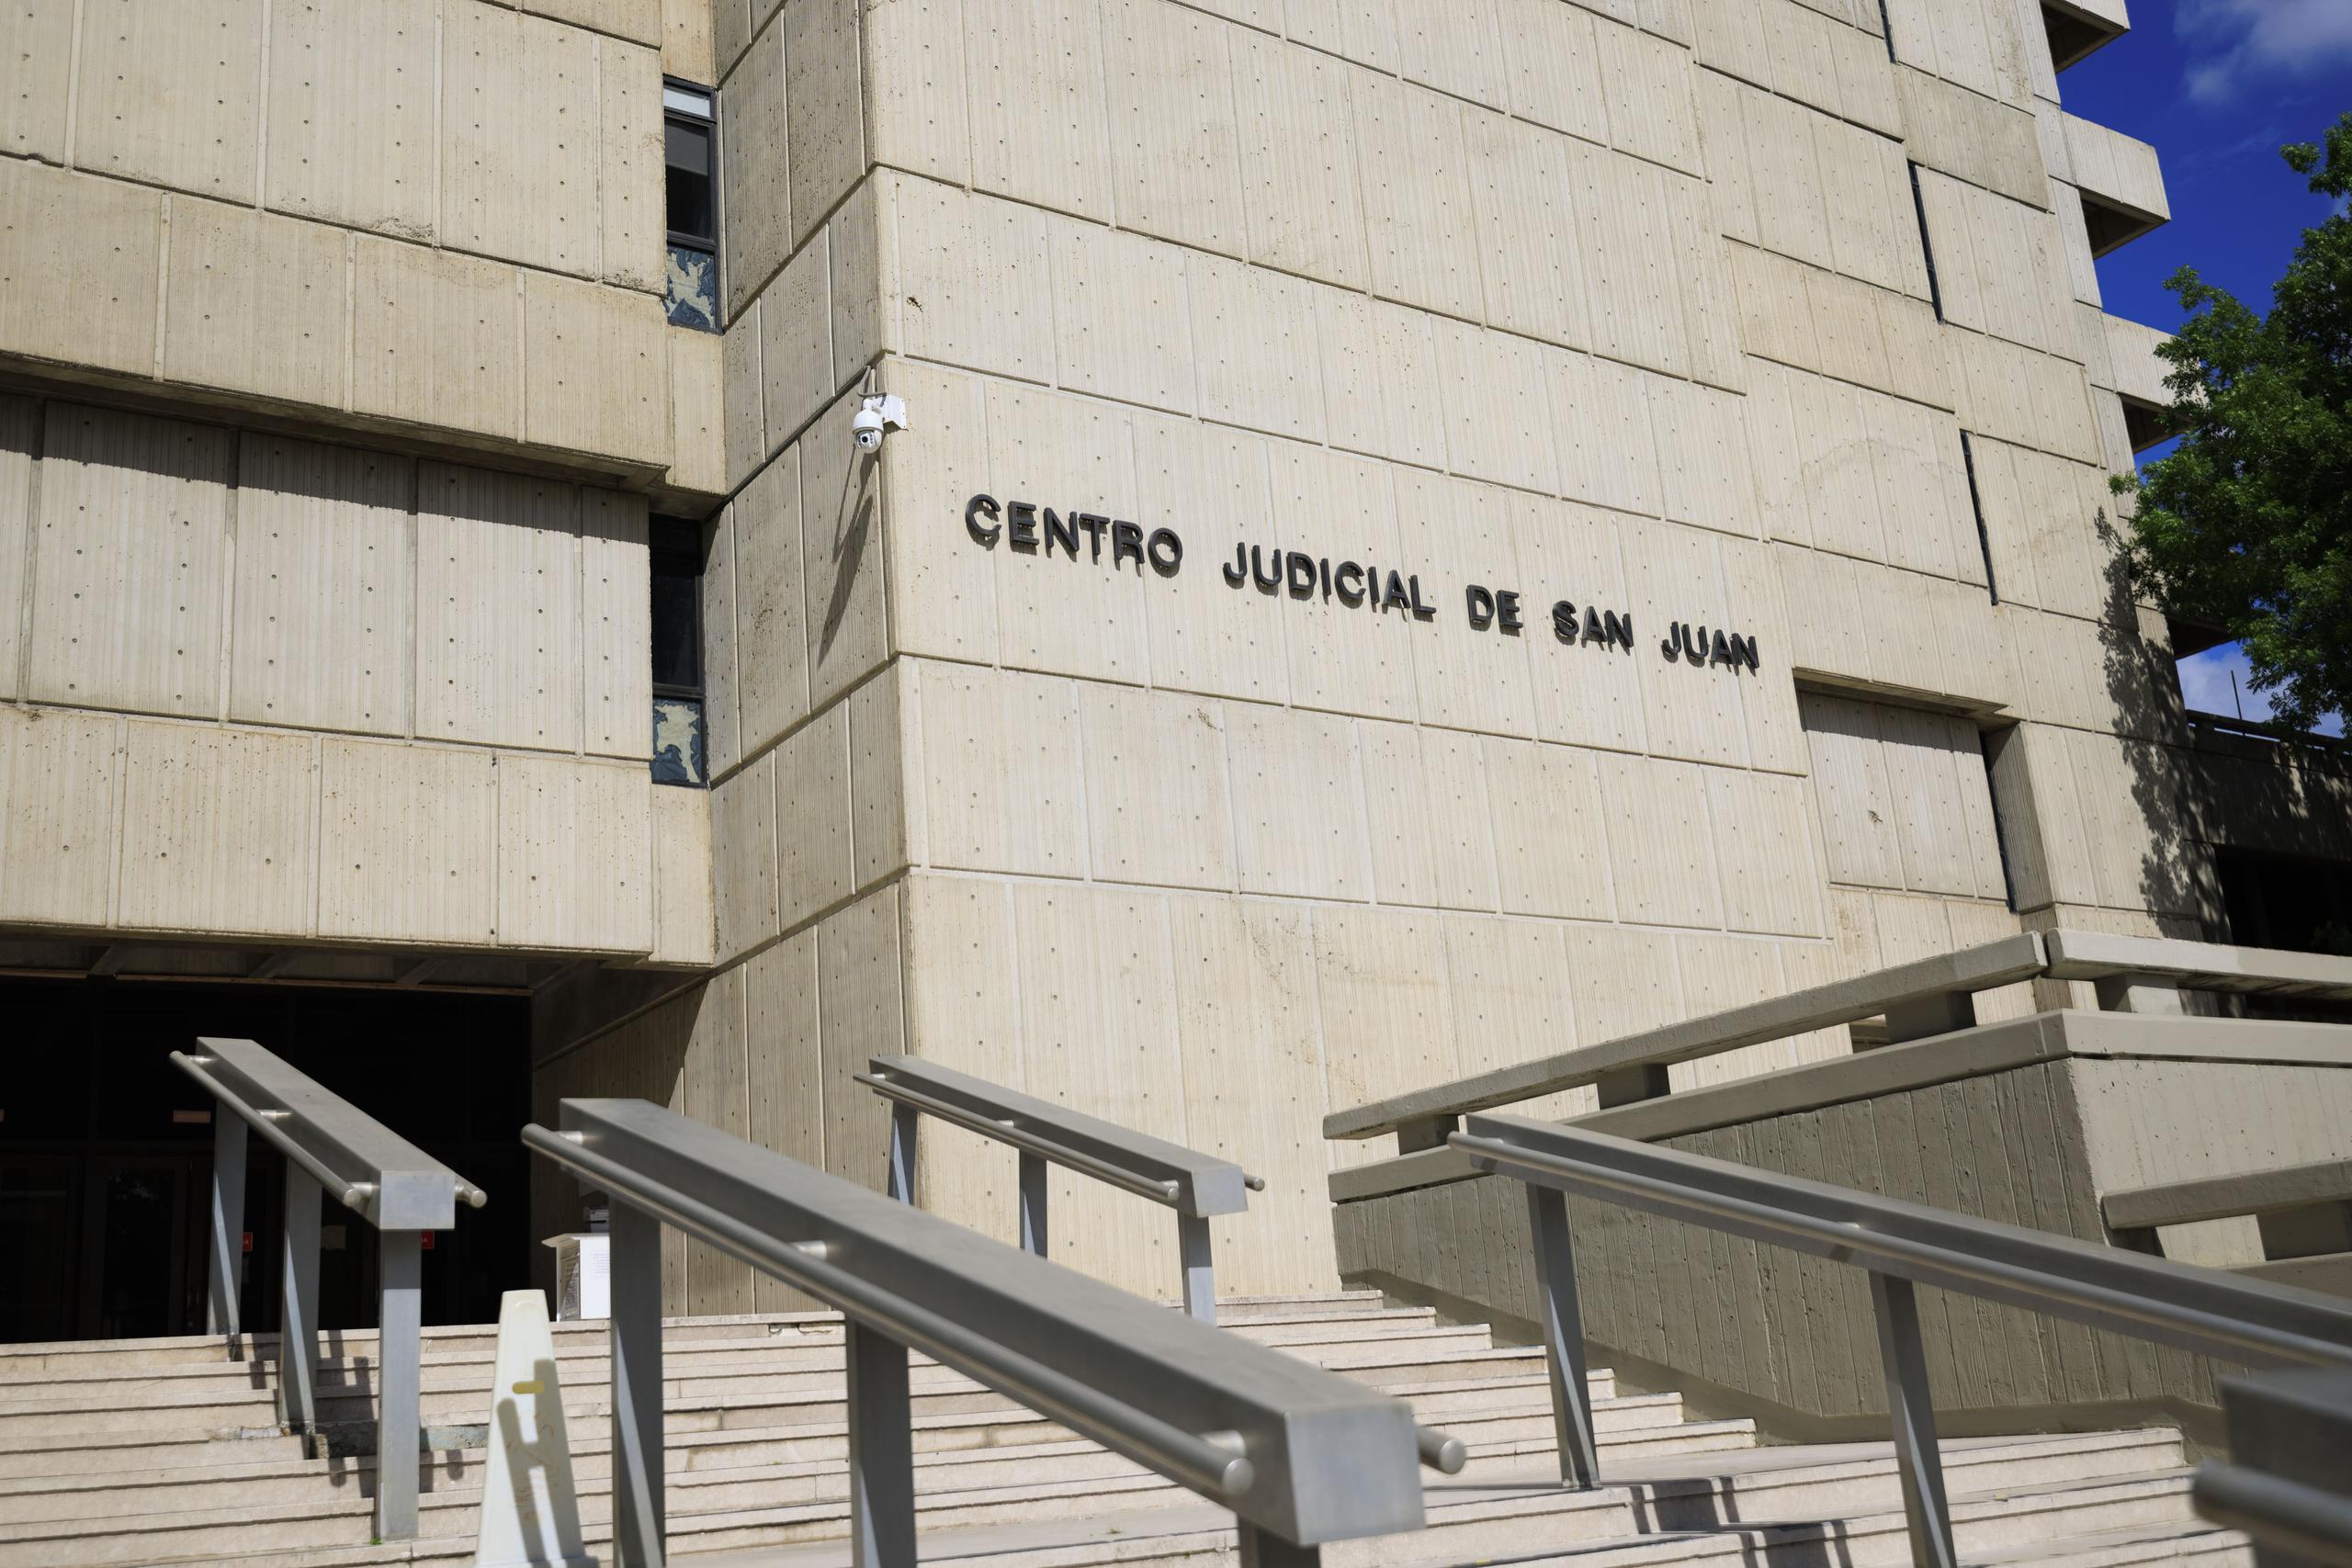 EN LA FOTO el Centro Judicial de San Juan, (Archivo / Ramon " Tonito " Zayas / GFR Media)